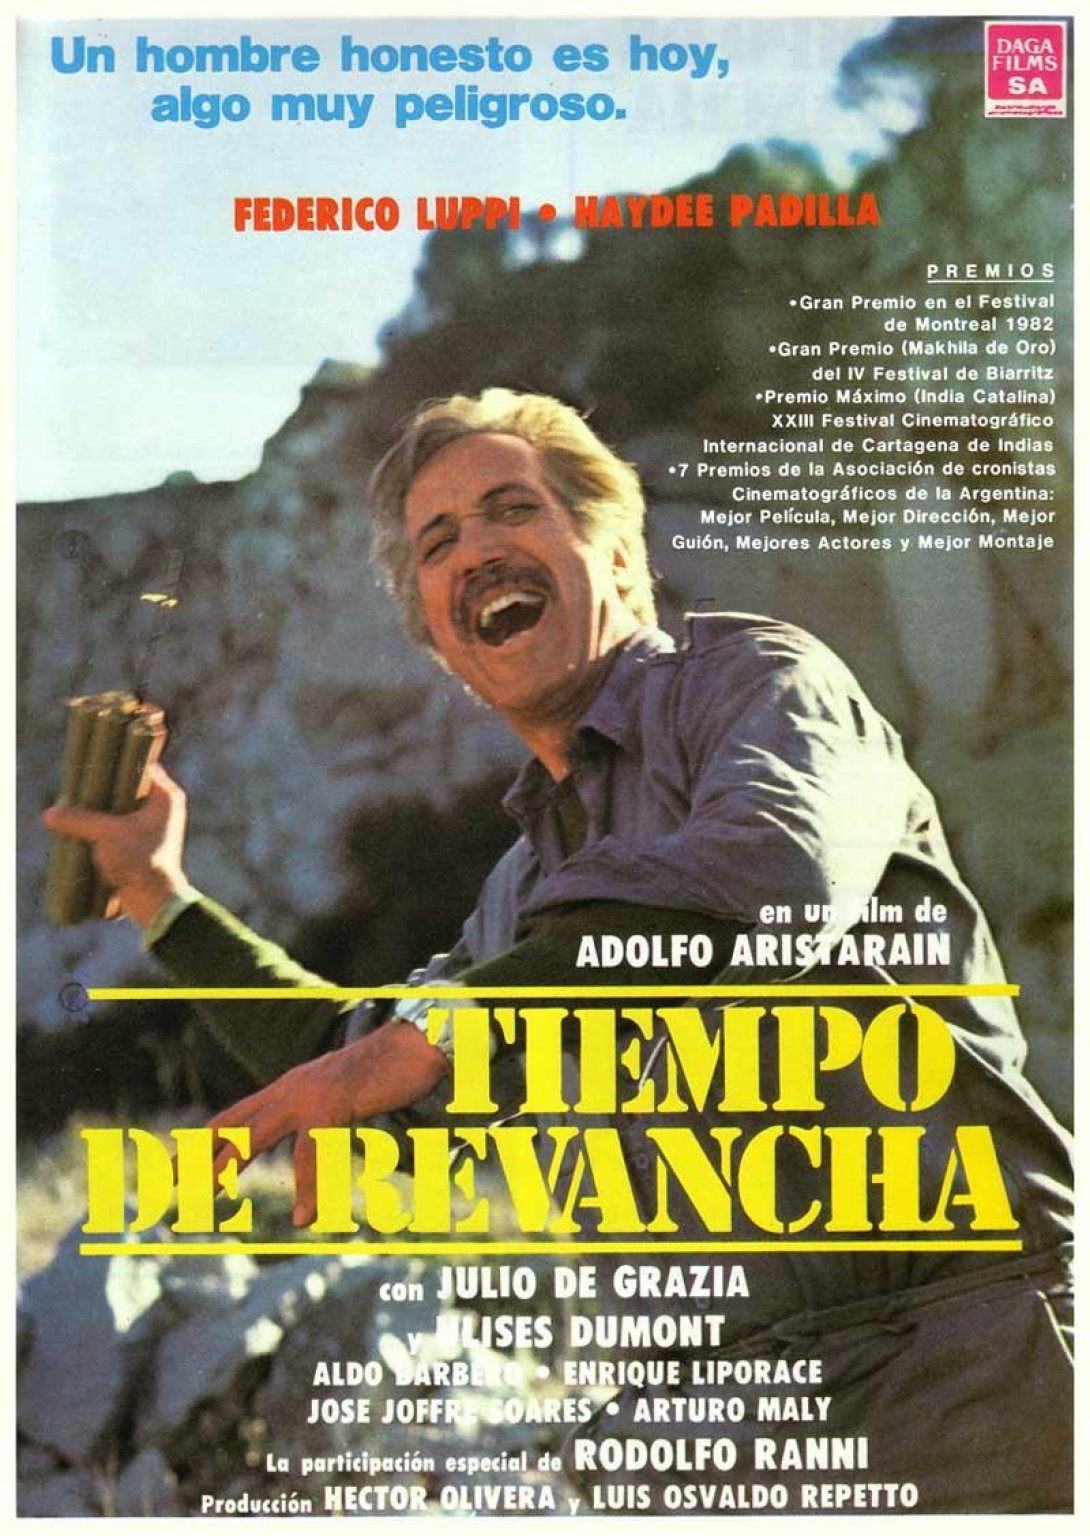 Cartel de la película "Tiempo de revancha", de Adolfo Aristarain.